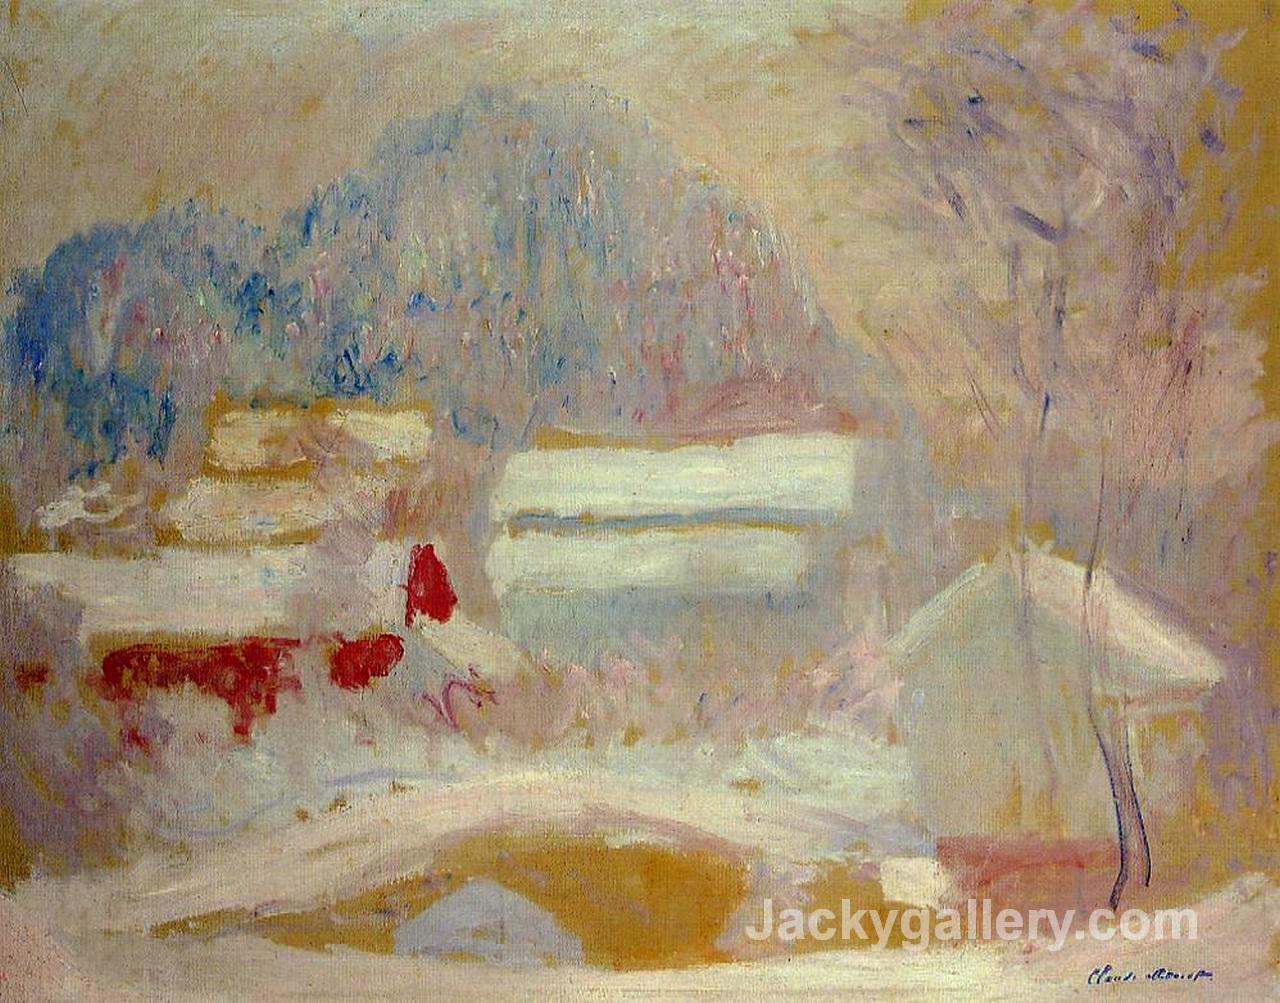 Norwegian Landscape, Sandviken by Claude Monet paintings reproduction